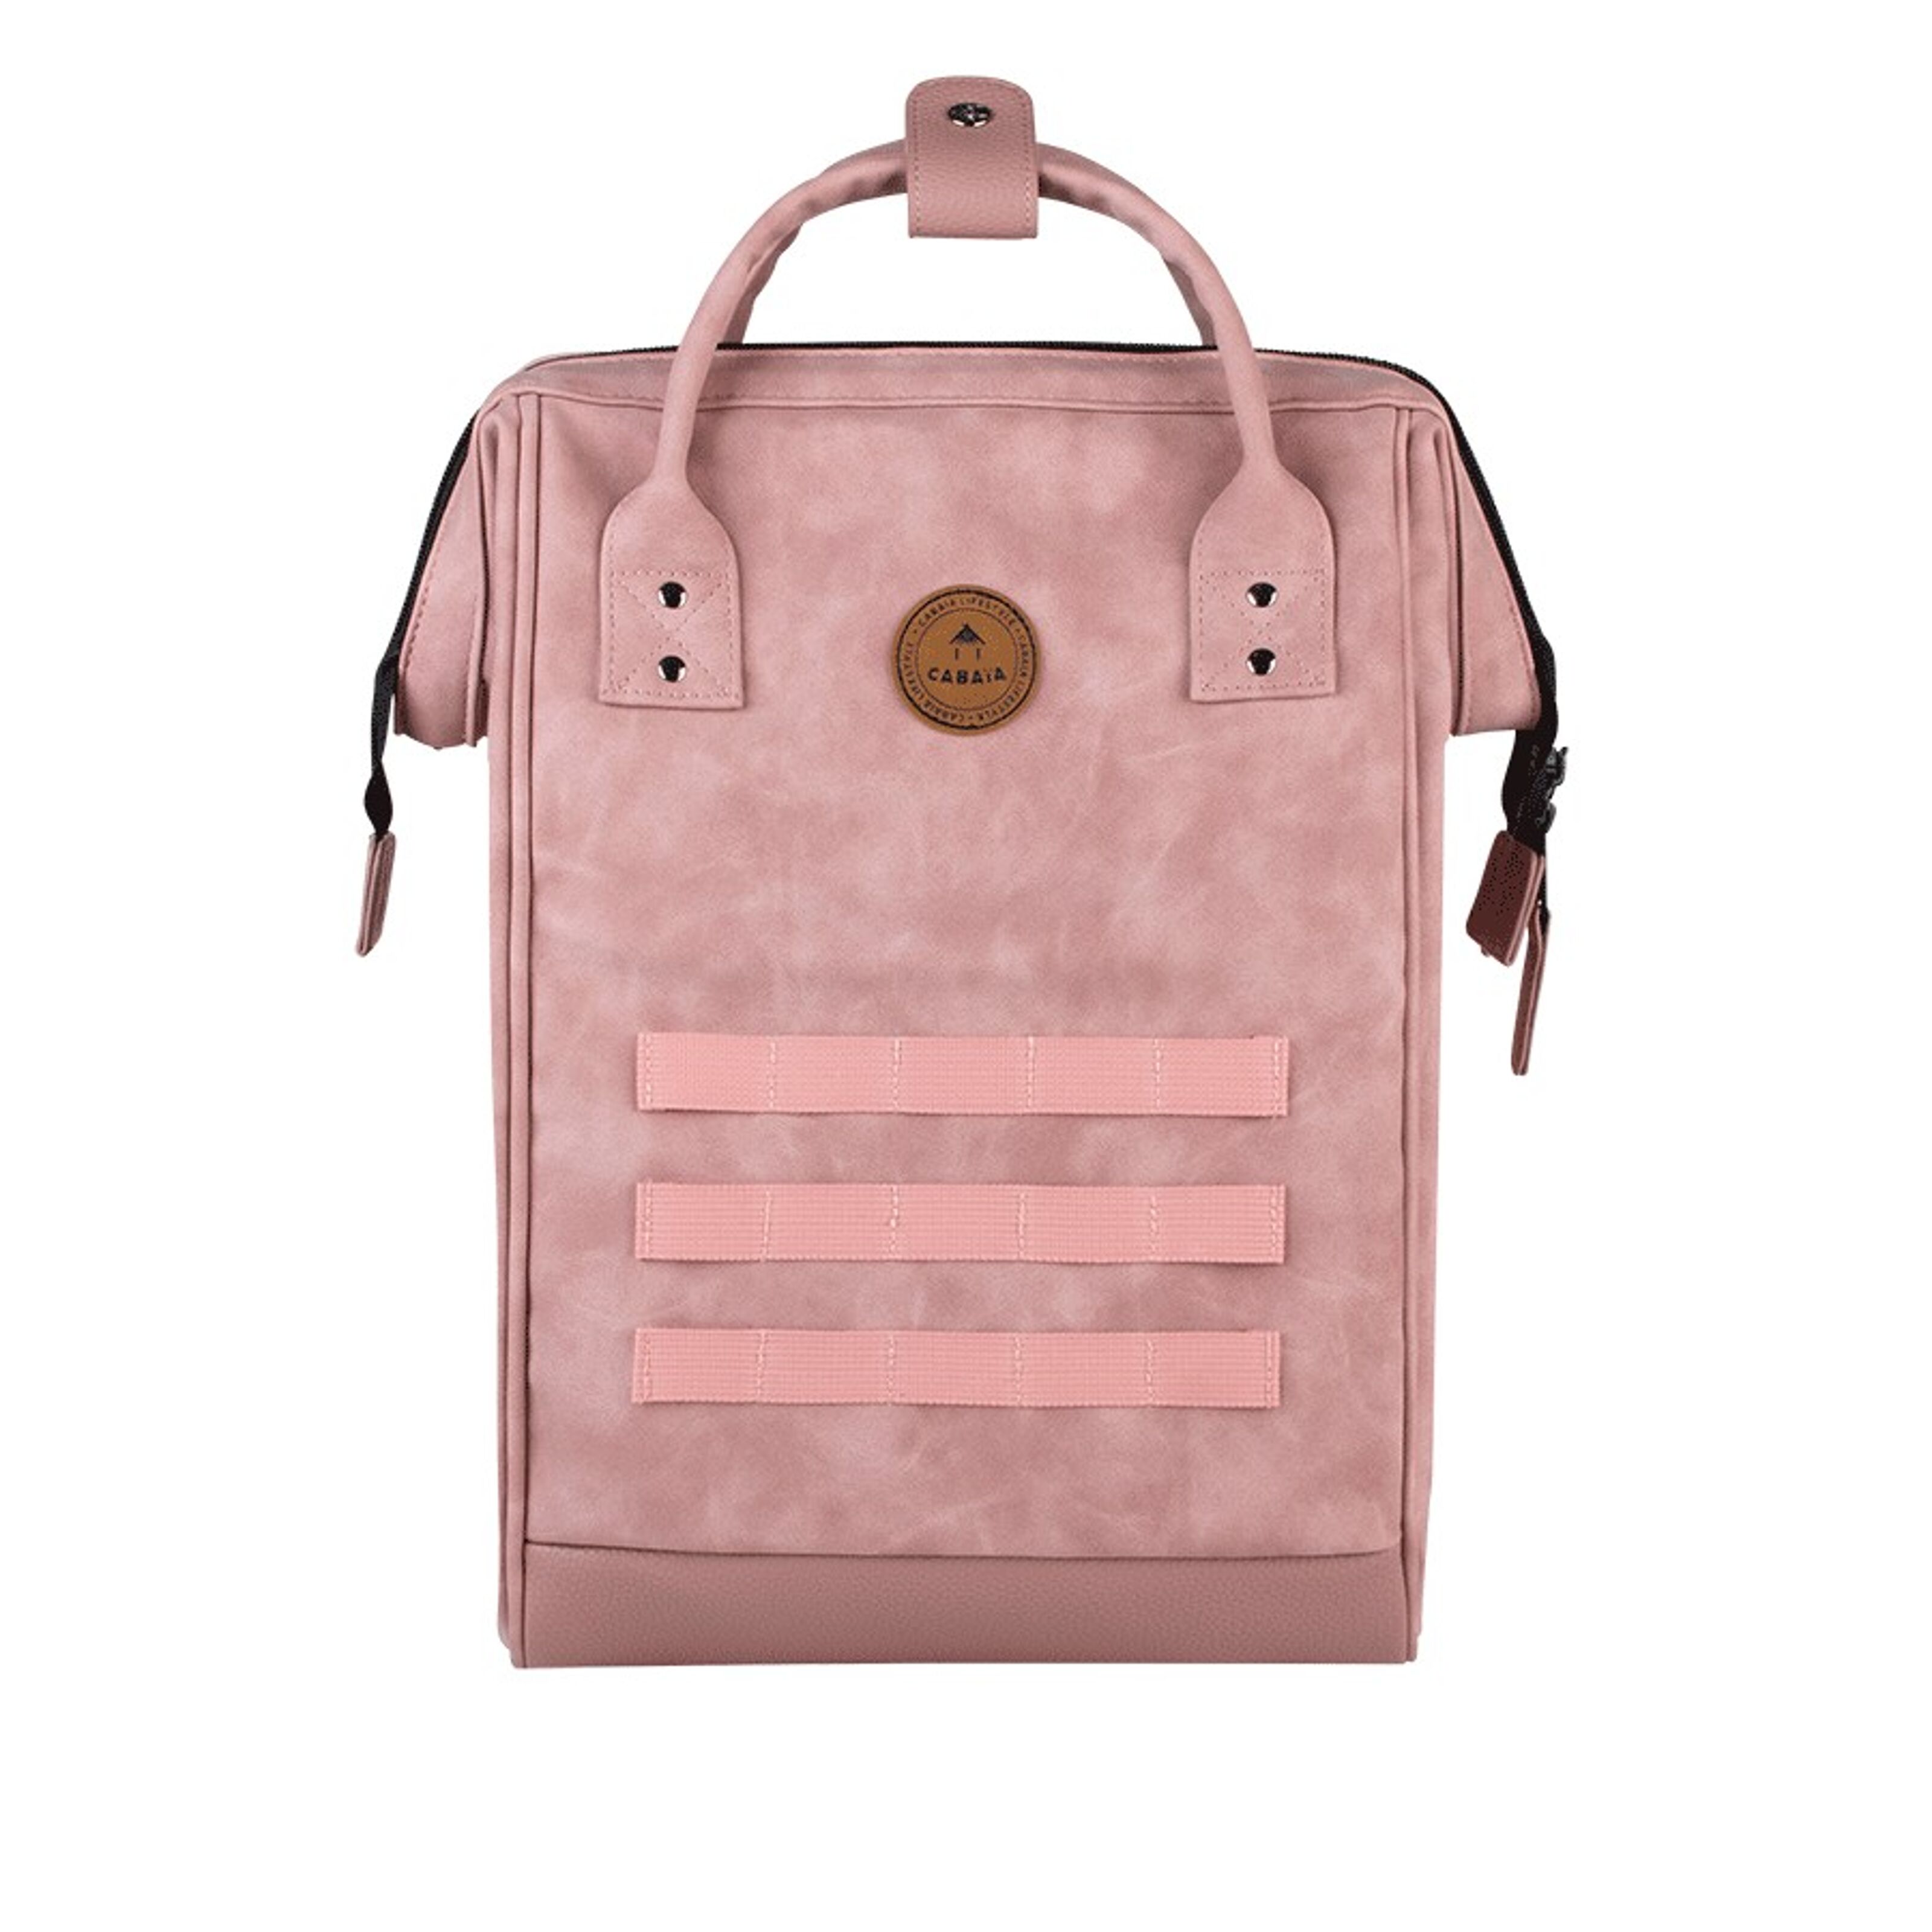 Buy wholesale Adventurer light pink - Medium - Backpack - No pocket